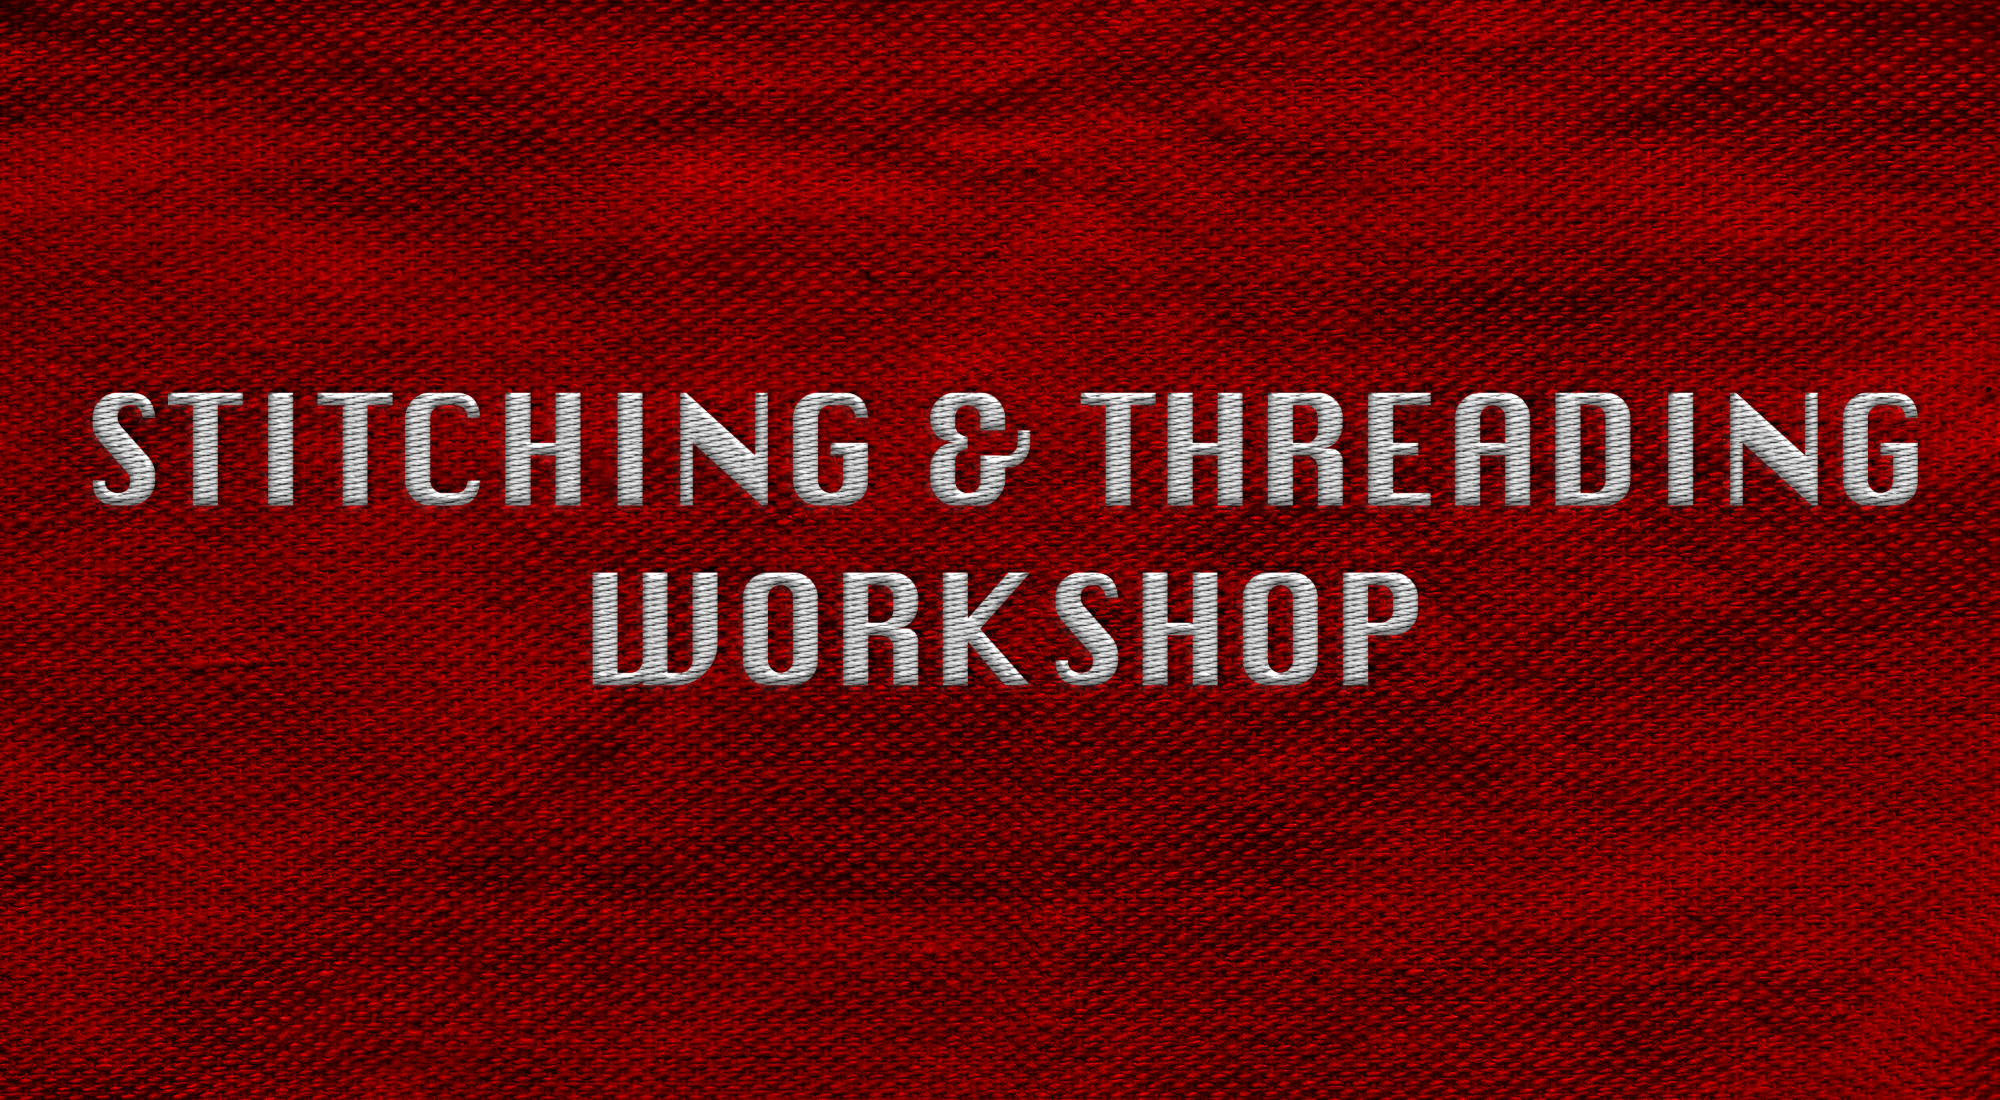 Stitching & Threading Workshop